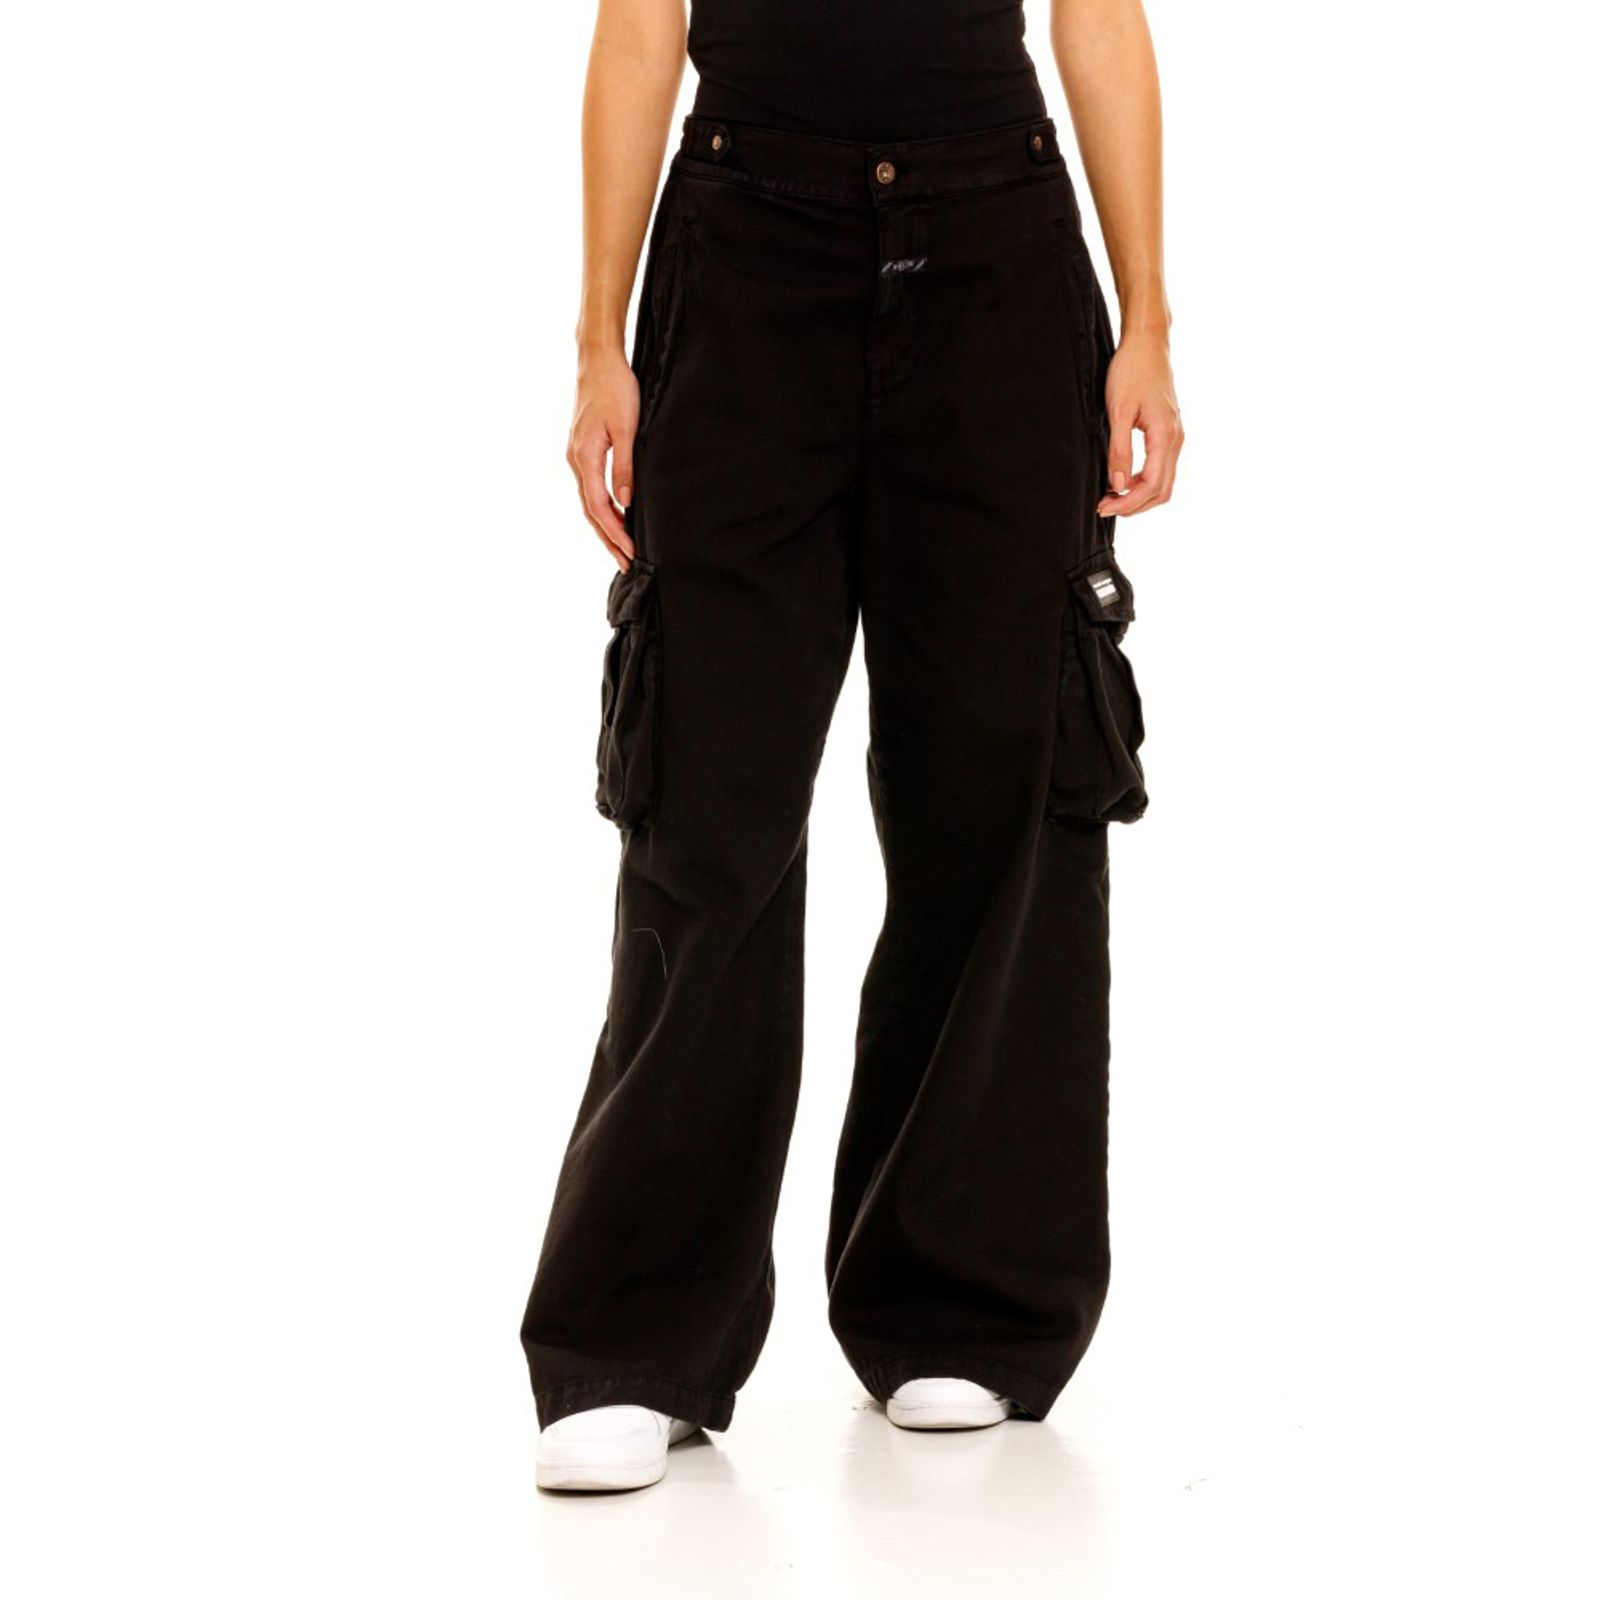 Pantalones Cargo para Mujer con Bota Recta 21-0015n – Sitio Oficial Pavi  Italy ®